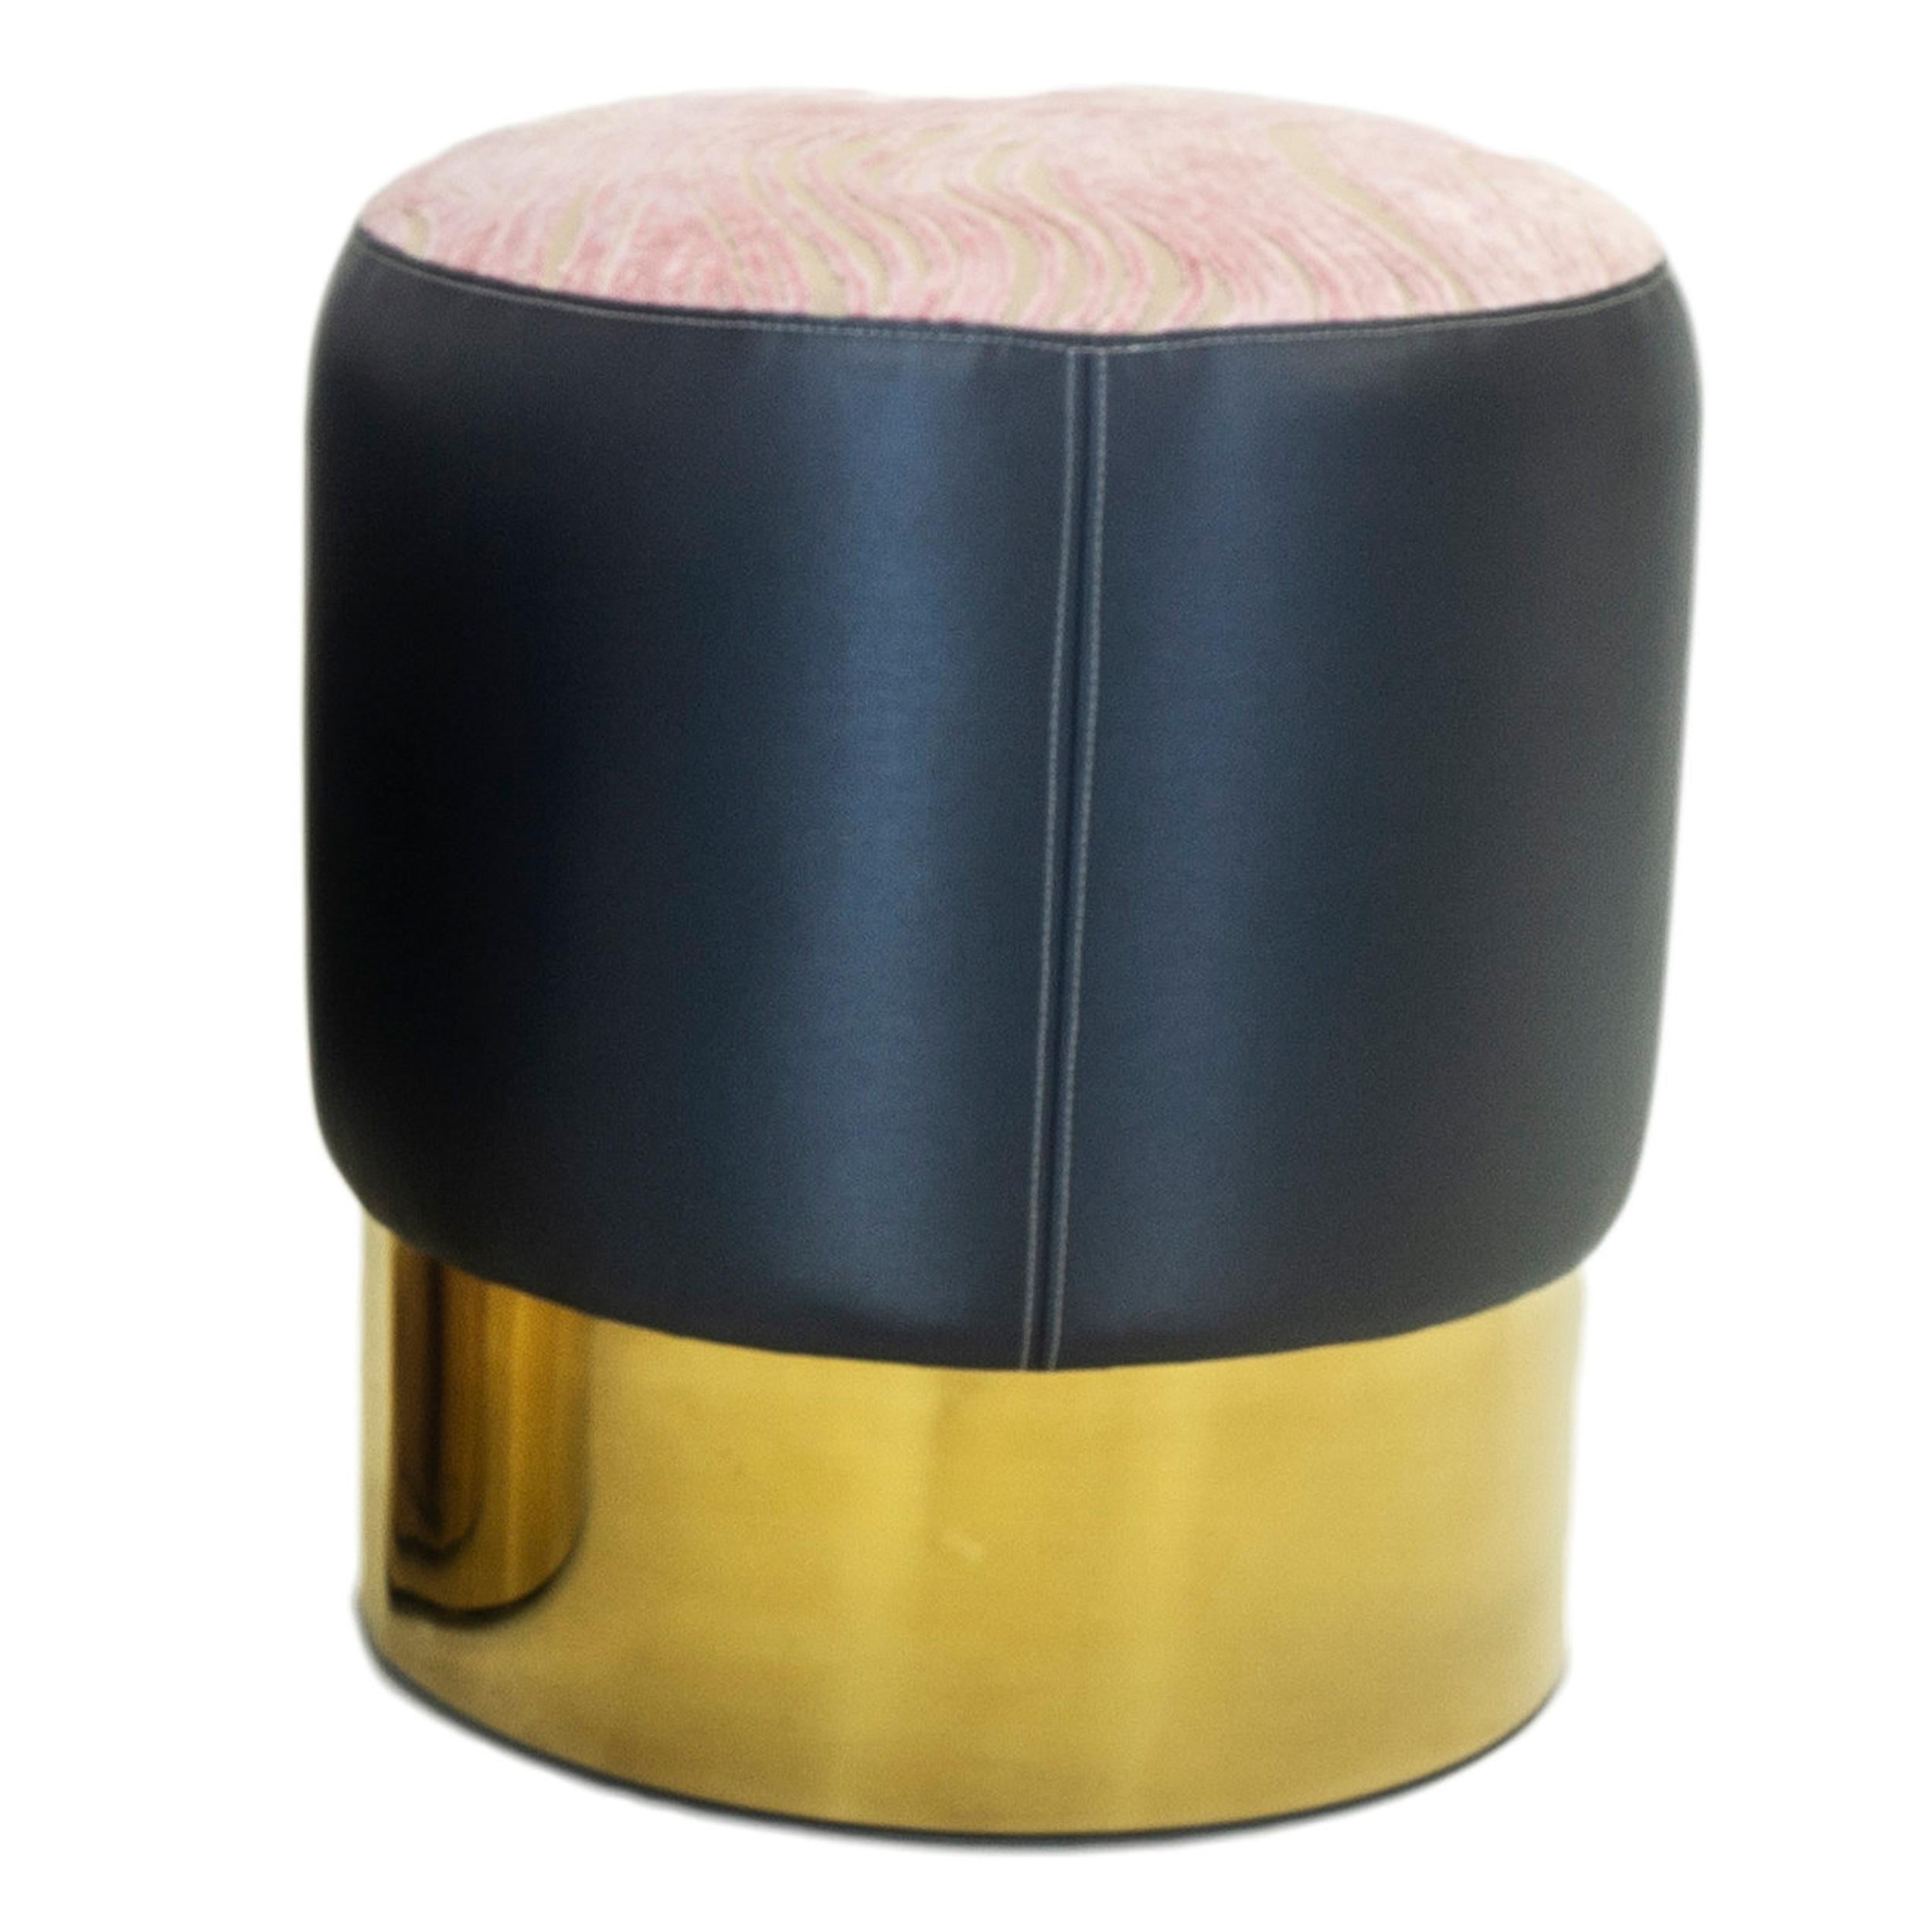 Unser kleiner runder Hocker ist der perfekte Akzent, der als zusätzliche Sitzgelegenheit genutzt werden kann. Der runde, goldfarbene Sockel ist mit marineblauem Vinyl gepolstert und oben mit pinkfarbenem Samt in einem wirbelnden Muster versehen.